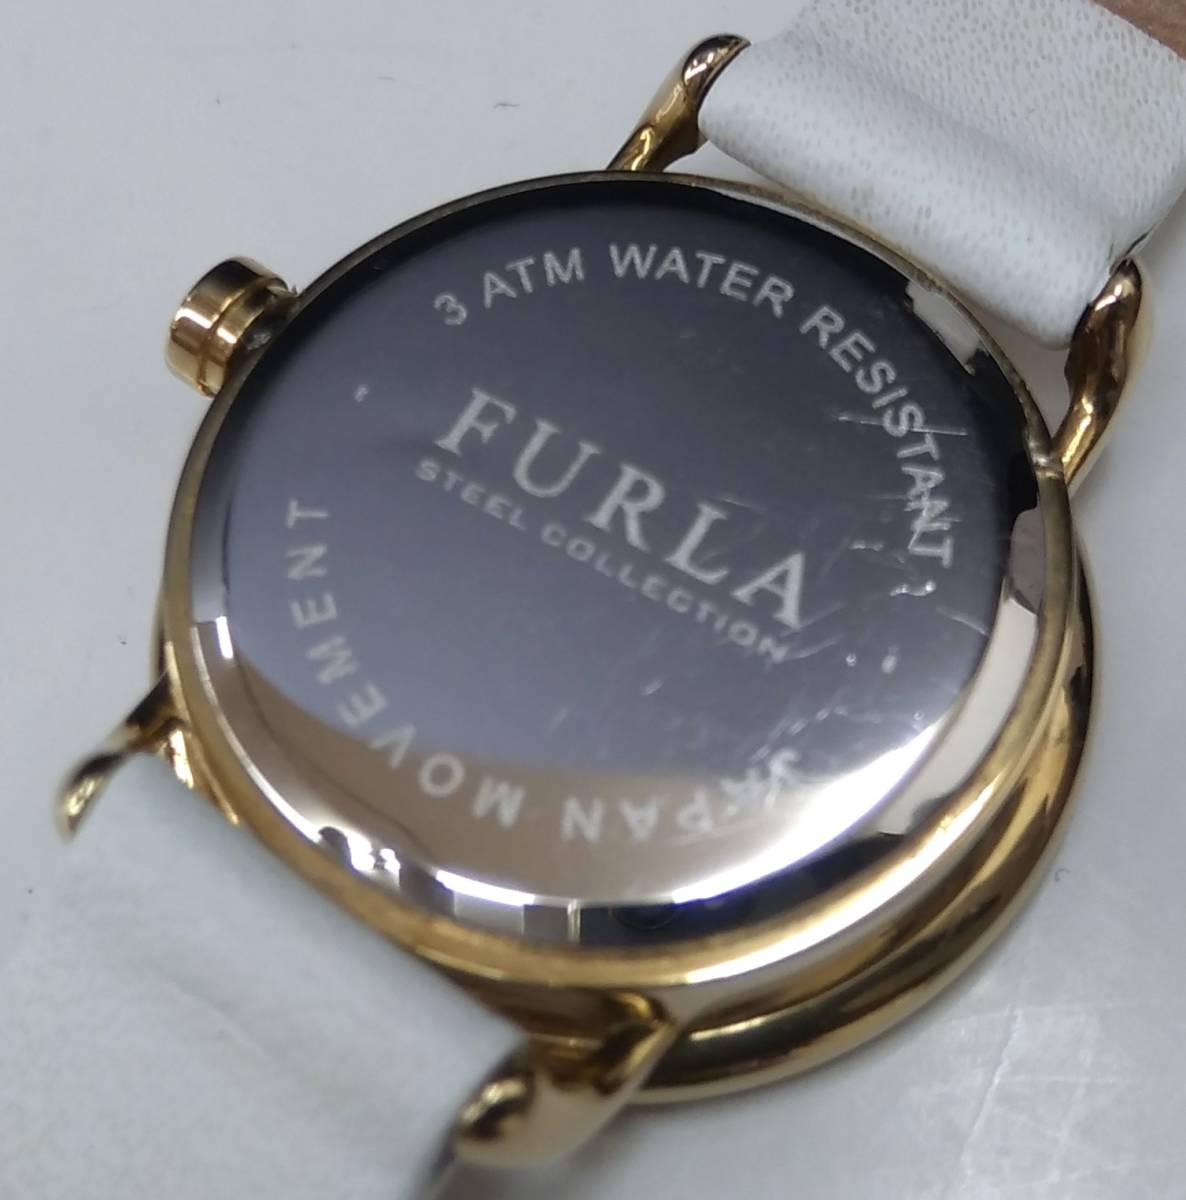 FURLA フルラ 腕時計 電池式 クォーツ ホワイト 白 ゴールド 文字盤ブラウン レザー 女性用 レディース ファッションウォッチ 店舗受取可_画像7